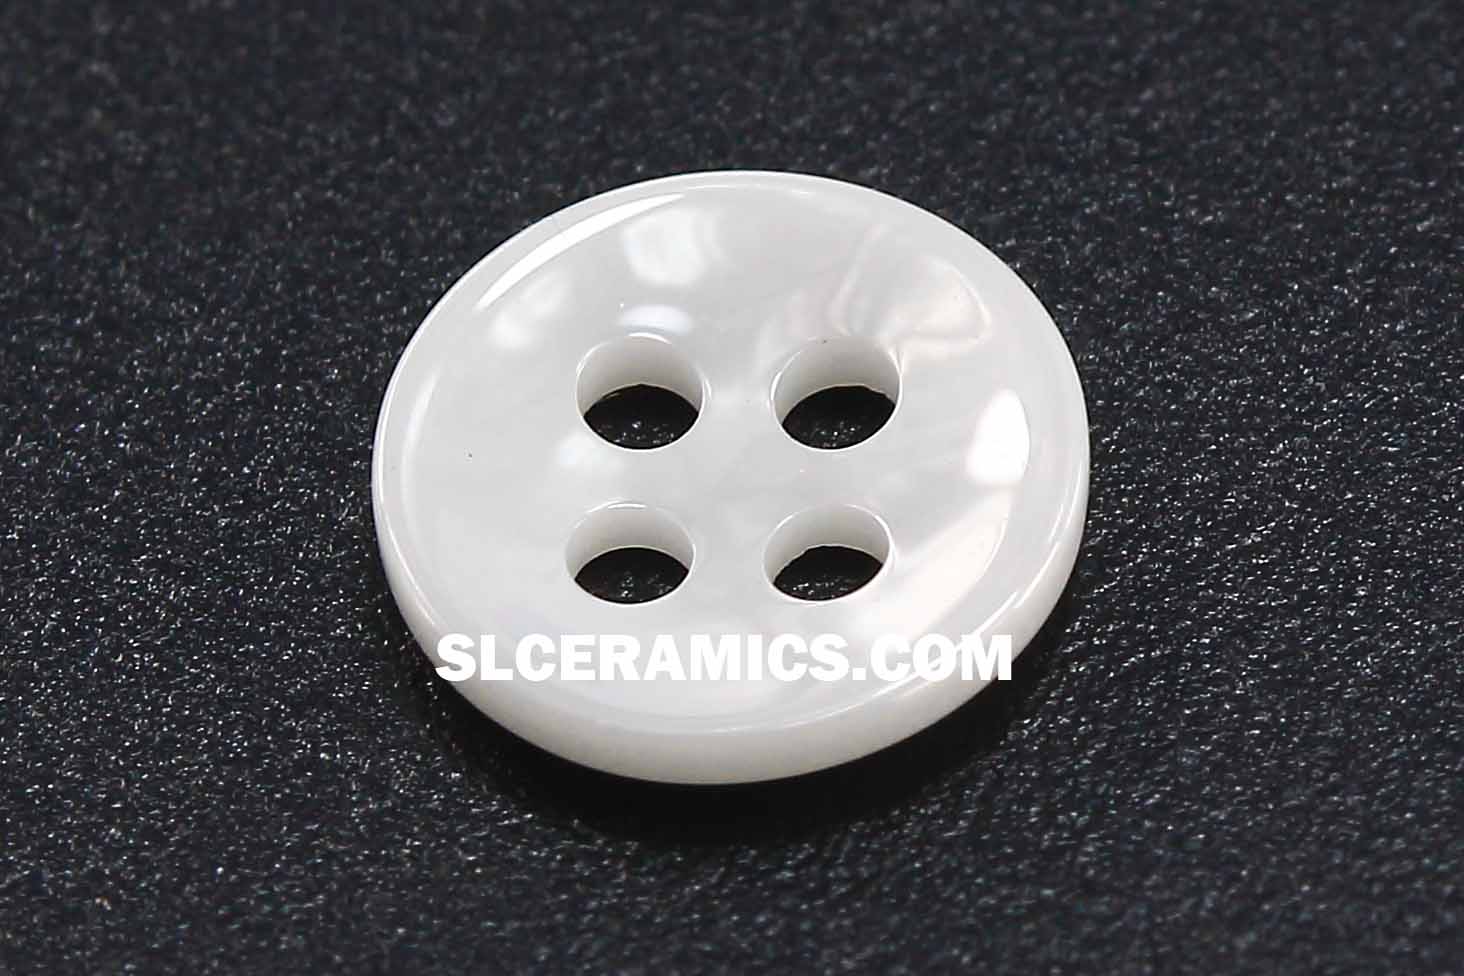 Thin money shirt zirconia ceramic buttons white